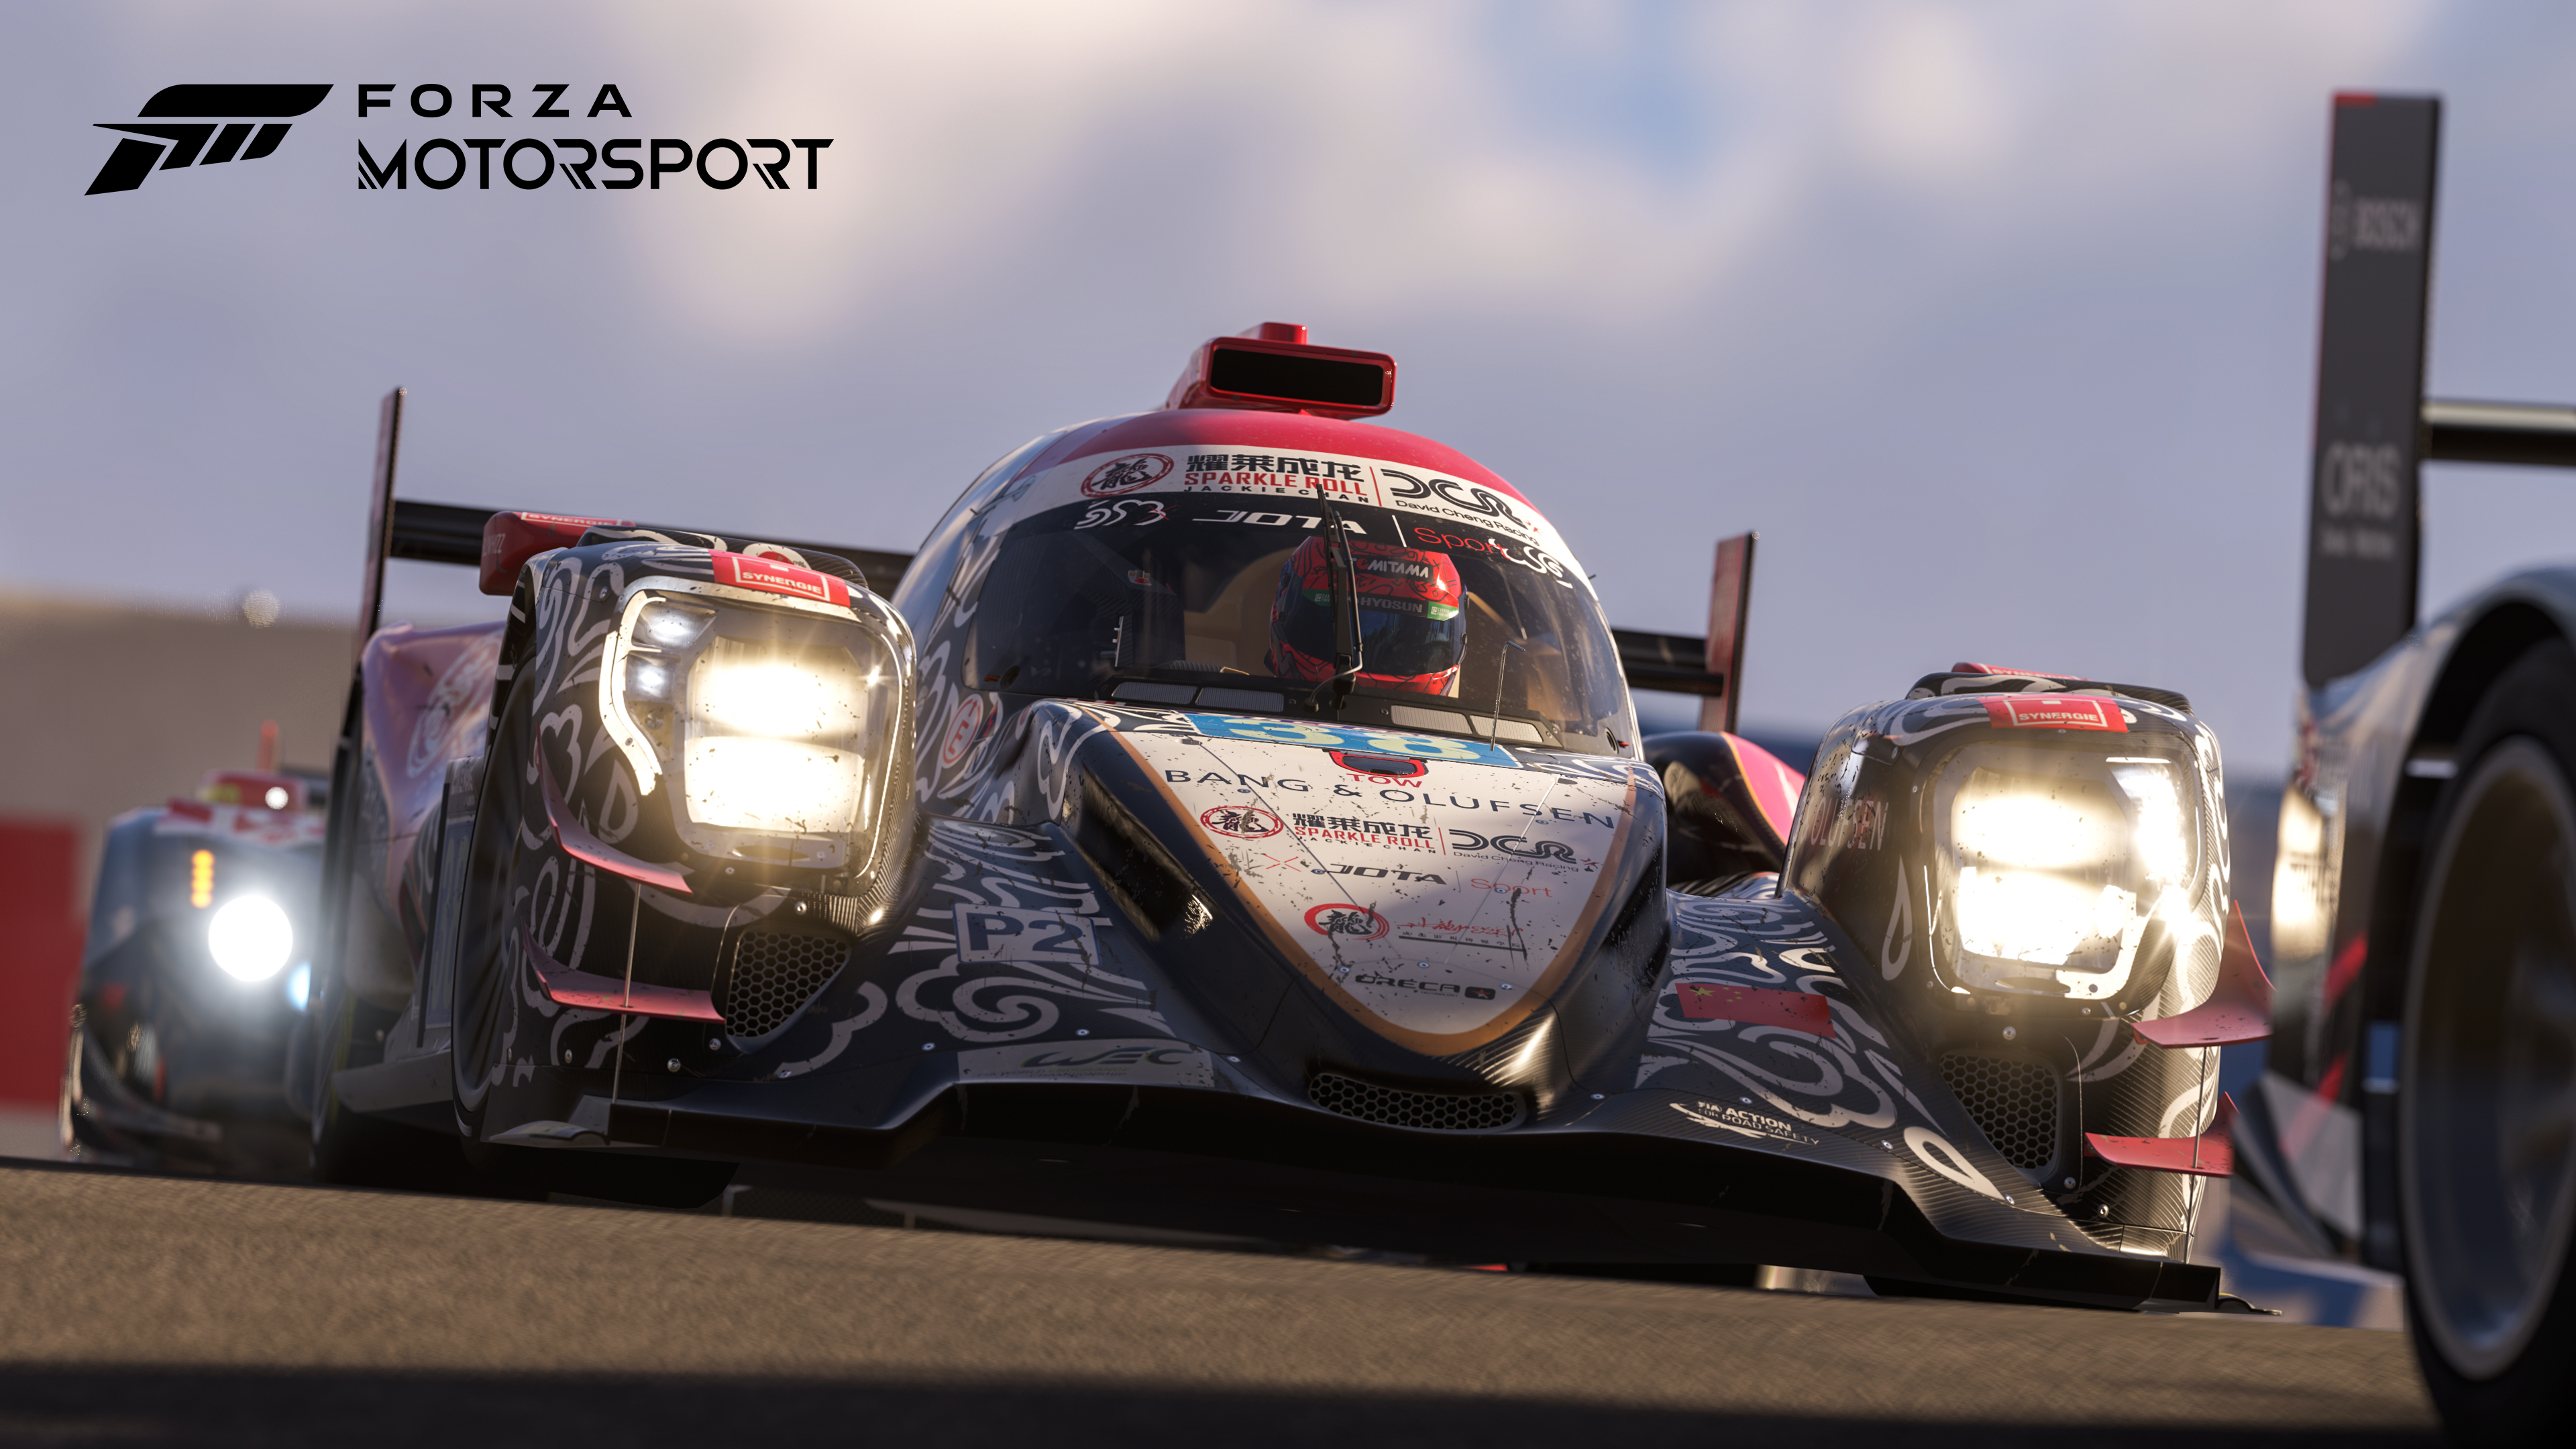 Tam incelememizden önce Forza Motorsport'tan (2023) neler beklenebilir? - Dünyadan Güncel Teknoloji Haberleri